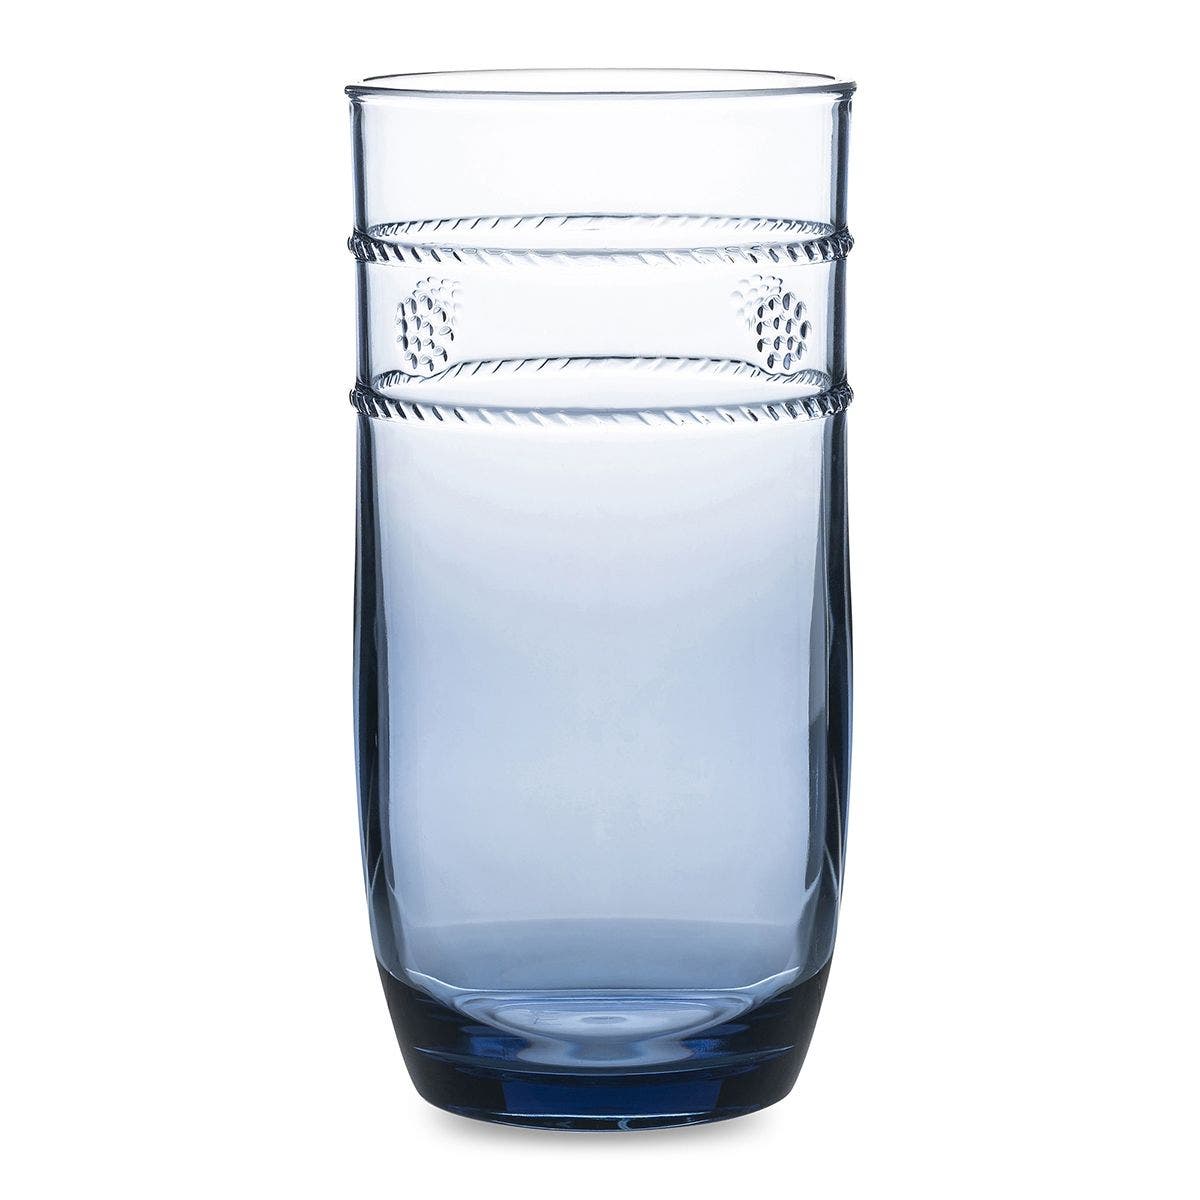 GLASS LARGE BEVERAGE ACRYLIC BLUE